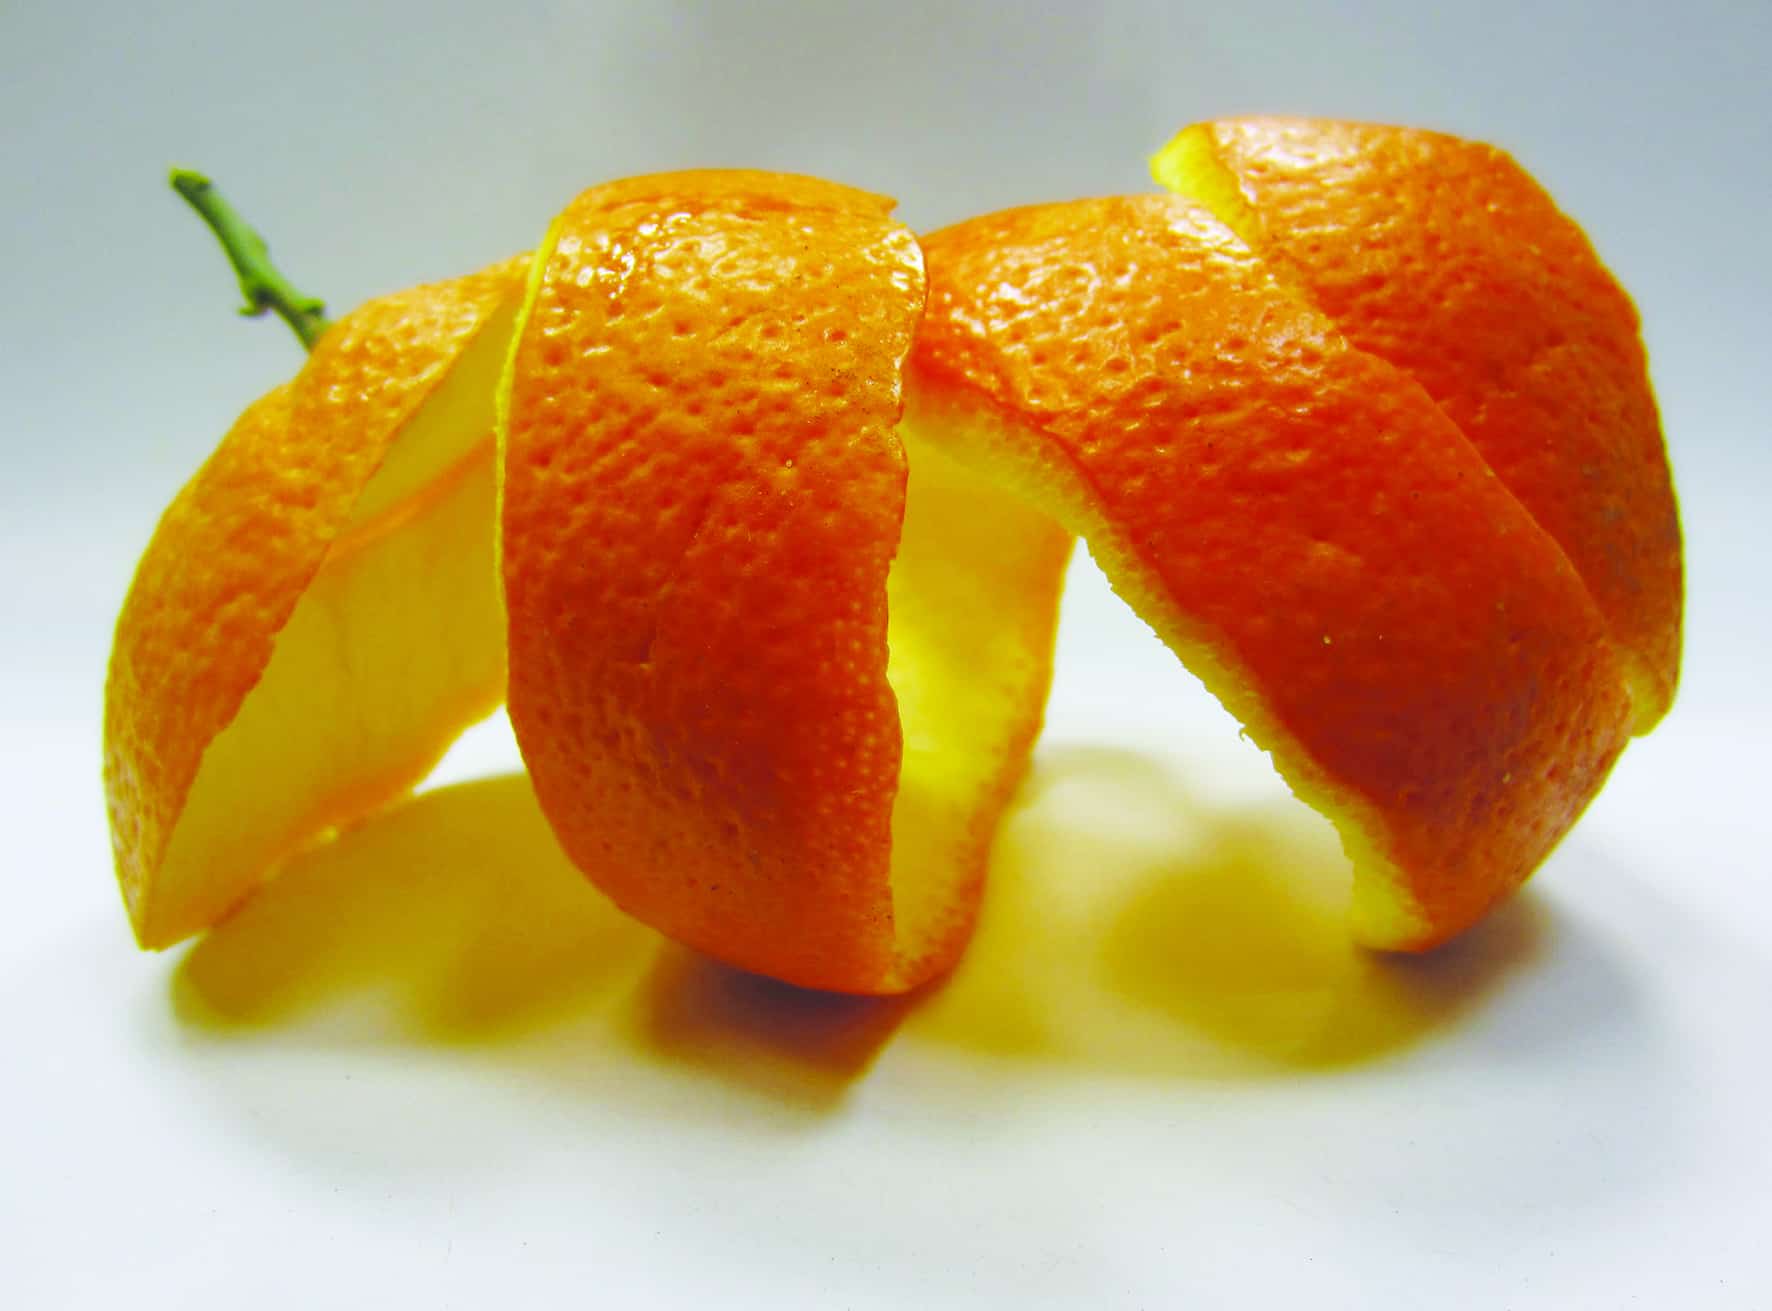 فوائد قشر البرتقال التي ستجعلك لا ترميه بعد اليوم أبداَ كنز حقيقي في مطبخك